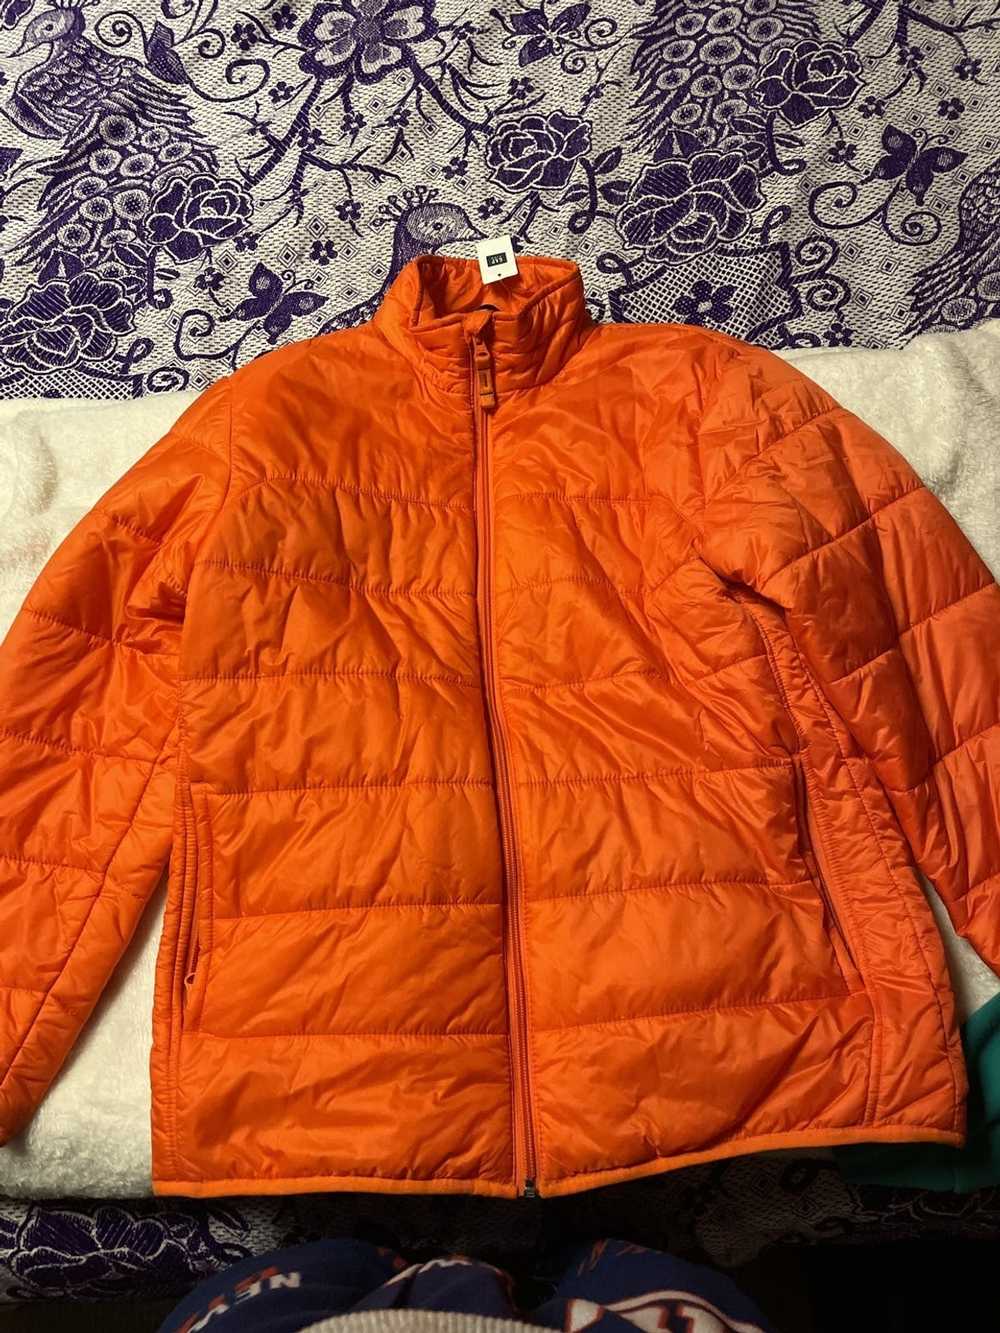 Gap Puffer jacket - image 1